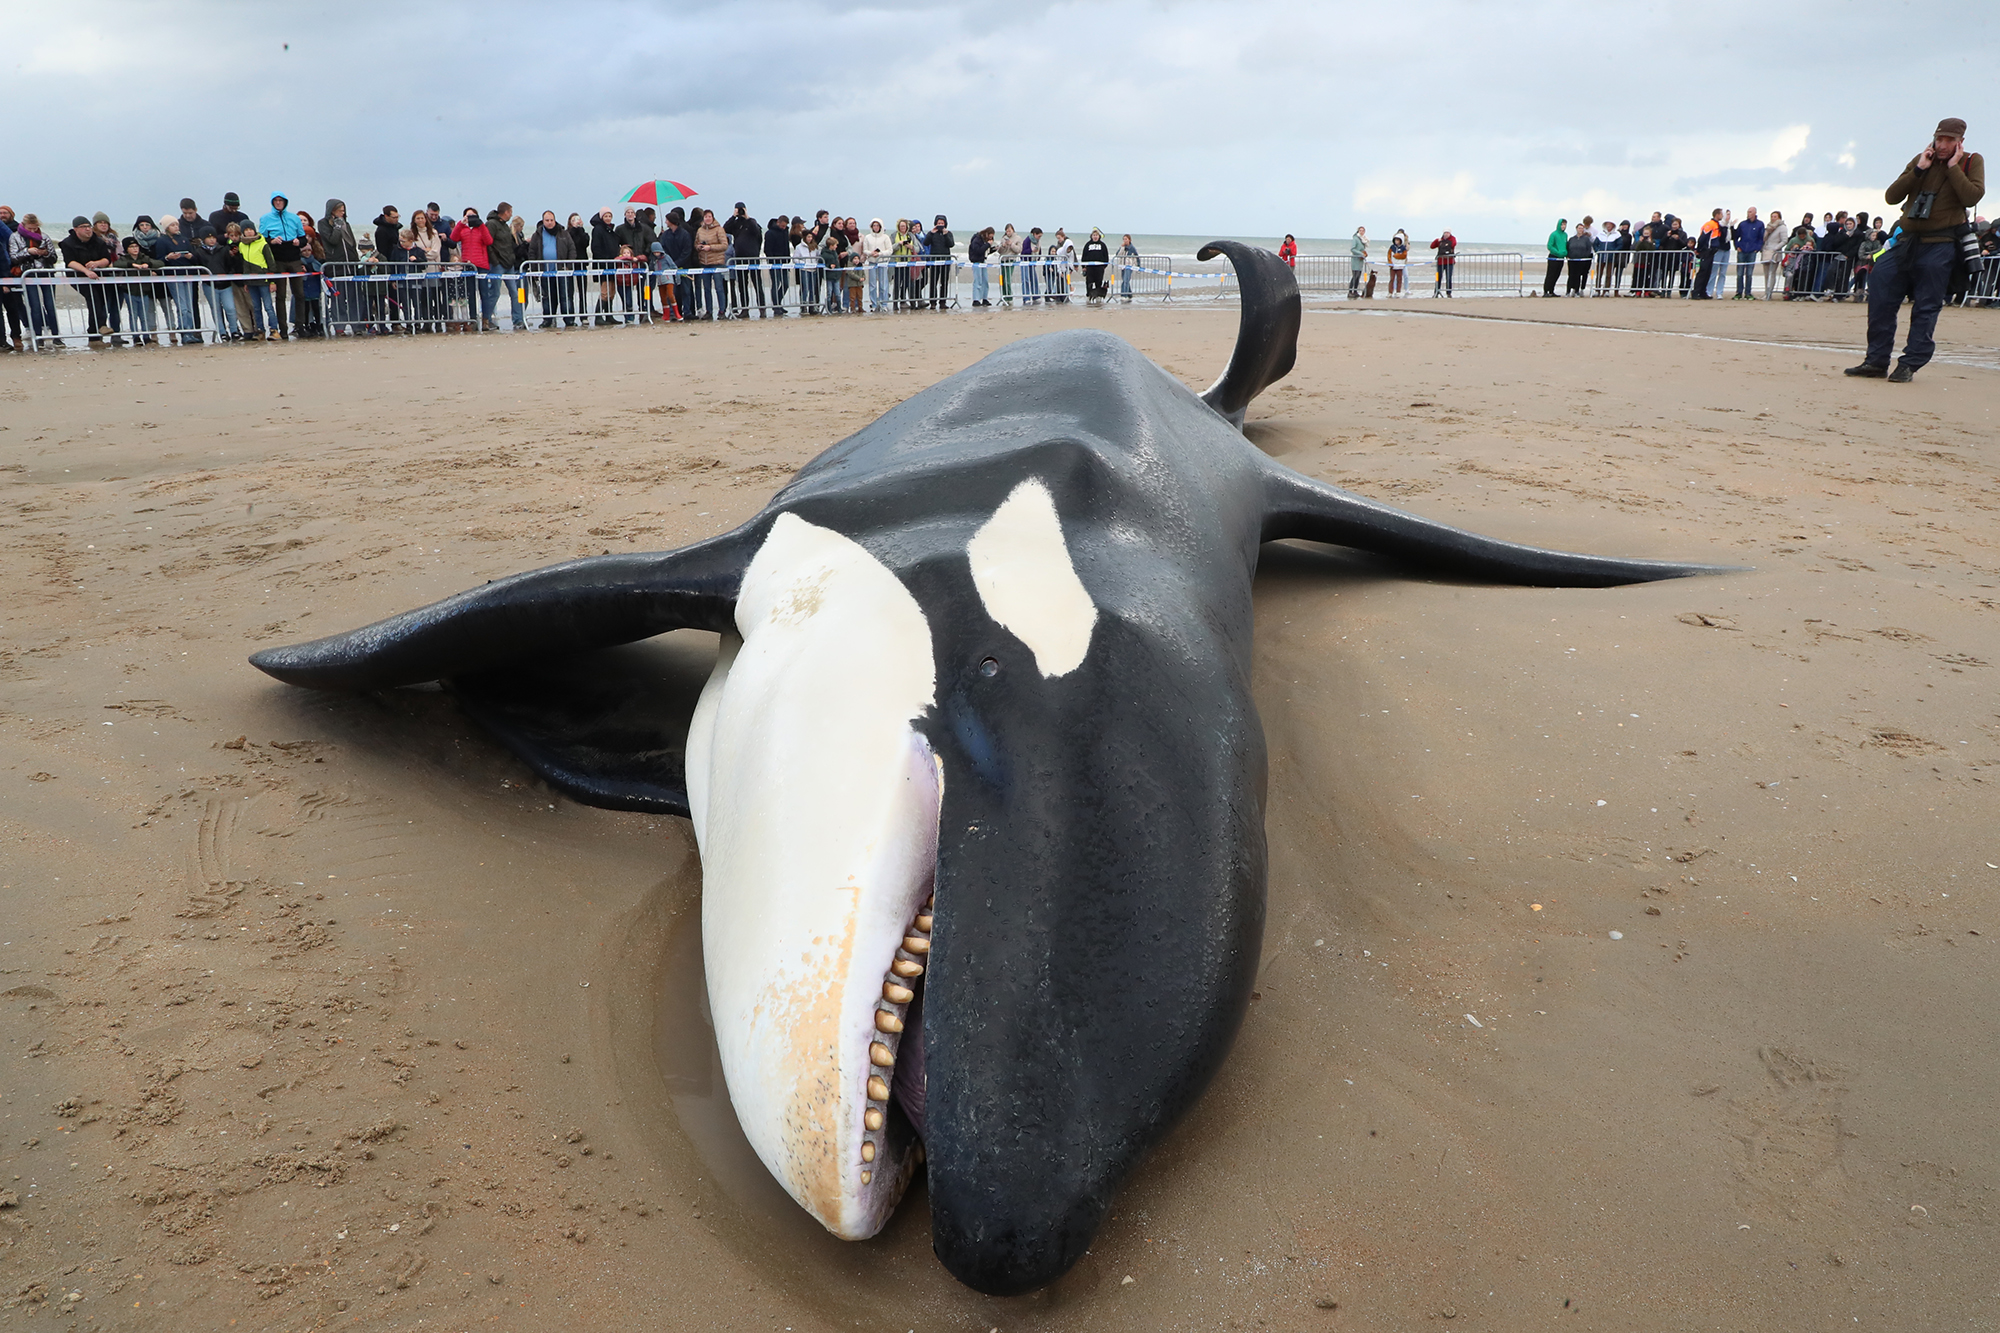 Der Orca am Strand von De Panne (Bild: Nicolas Maeterlinck/Belga)